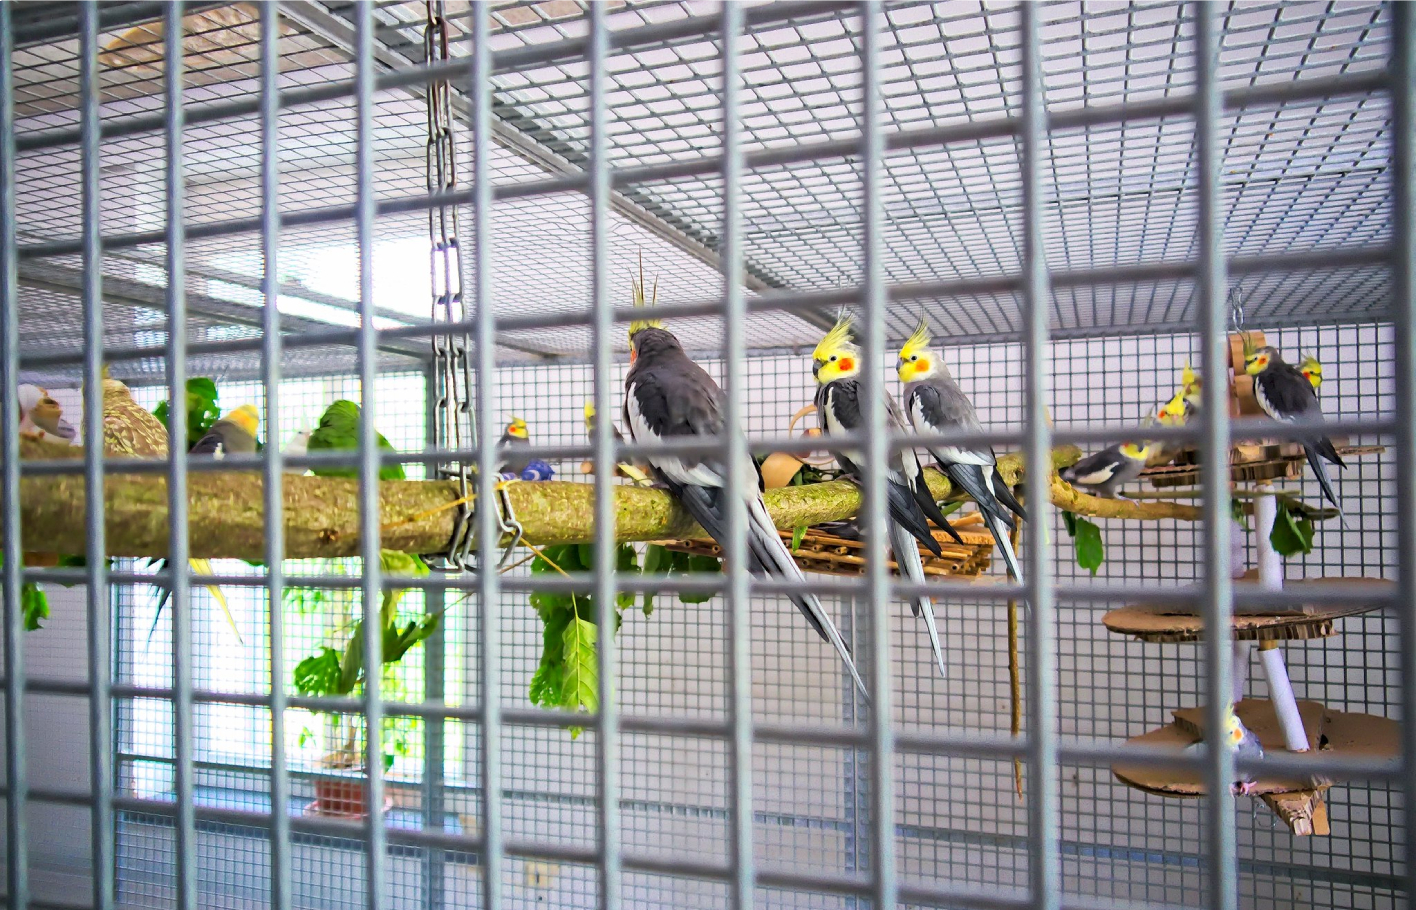 Fünf gelb-graue Vögel in einem Käfig auf einem in der Luft hängenden Stamm sitzend